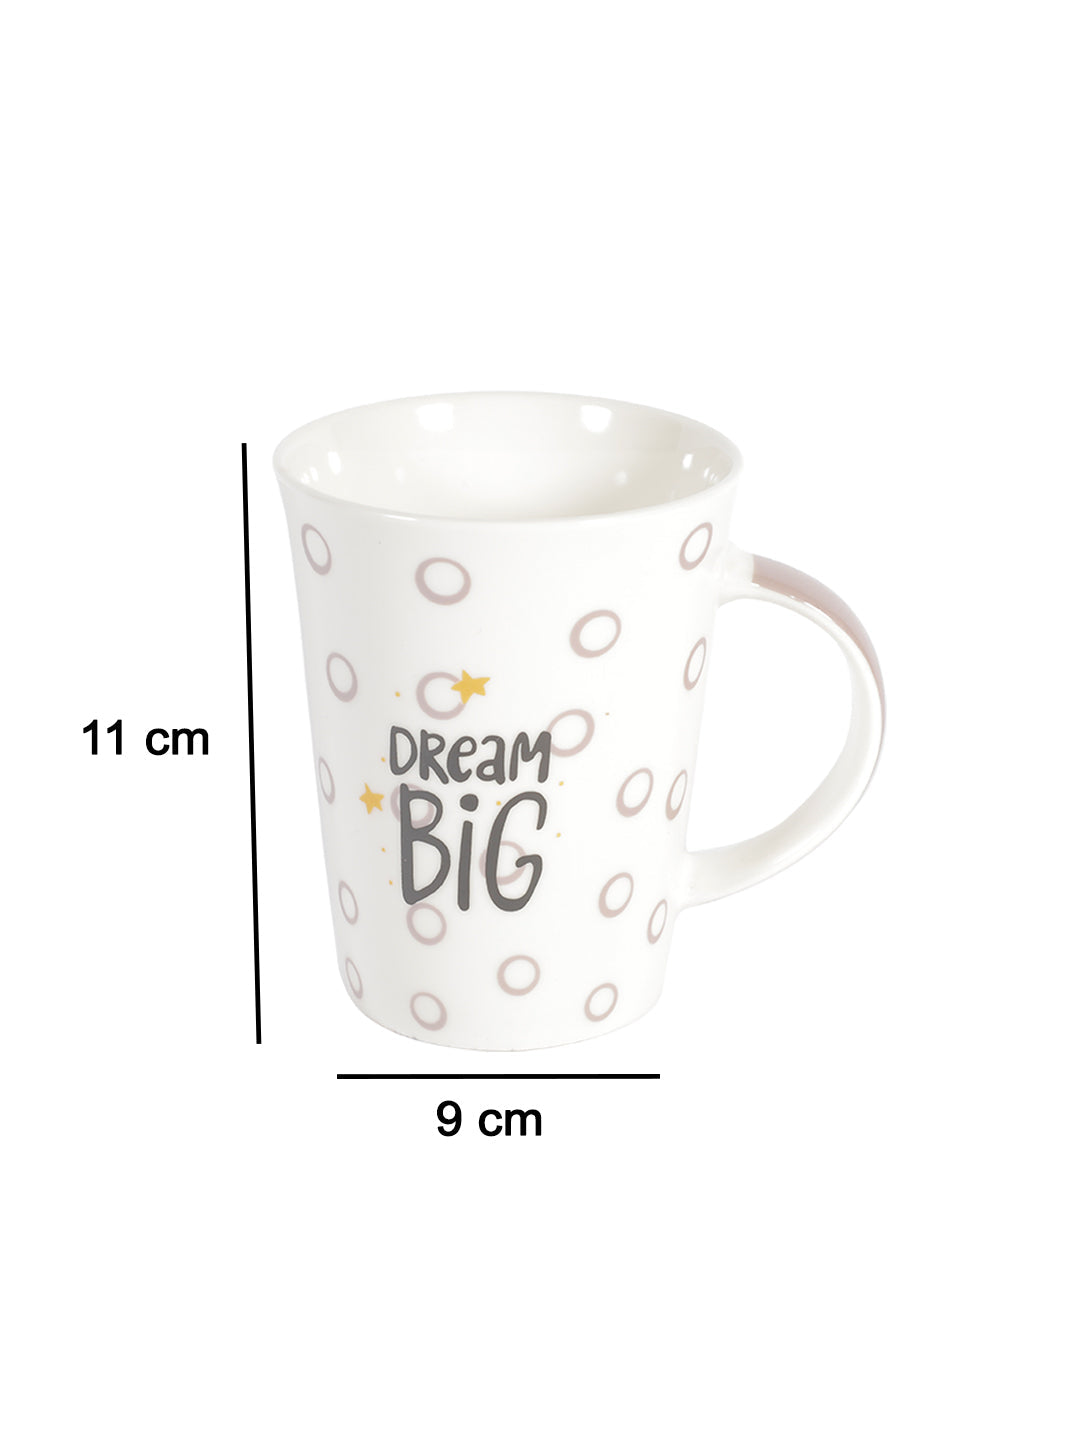 VON CASA 350Ml "dream BIG" Mug - White